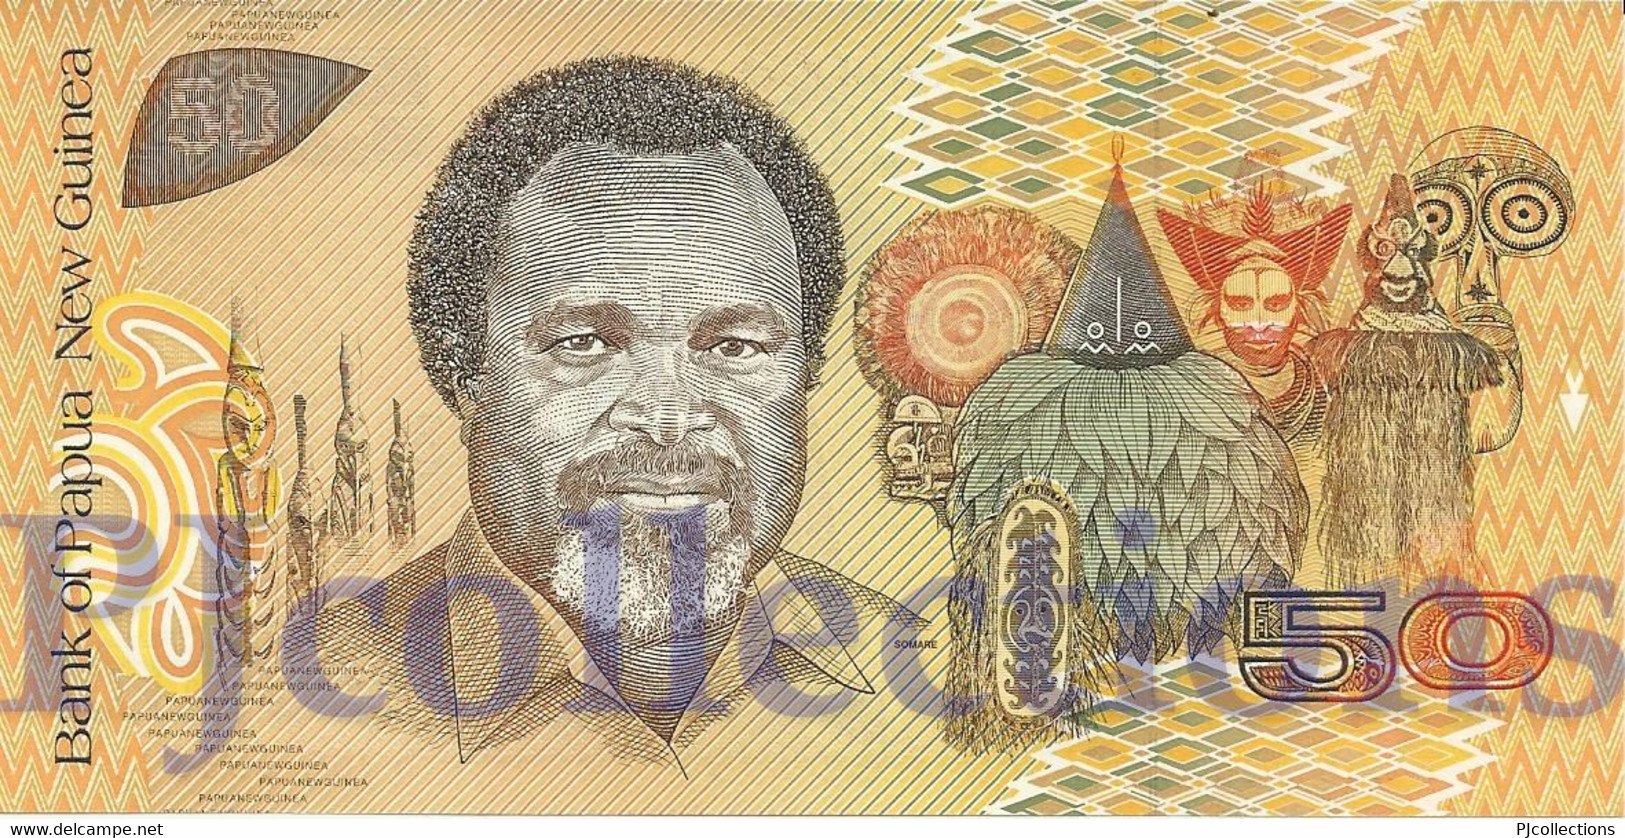 PAPUA NEW GUINEA 50 KINA 1989 PICK 11a UNC - Papouasie-Nouvelle-Guinée